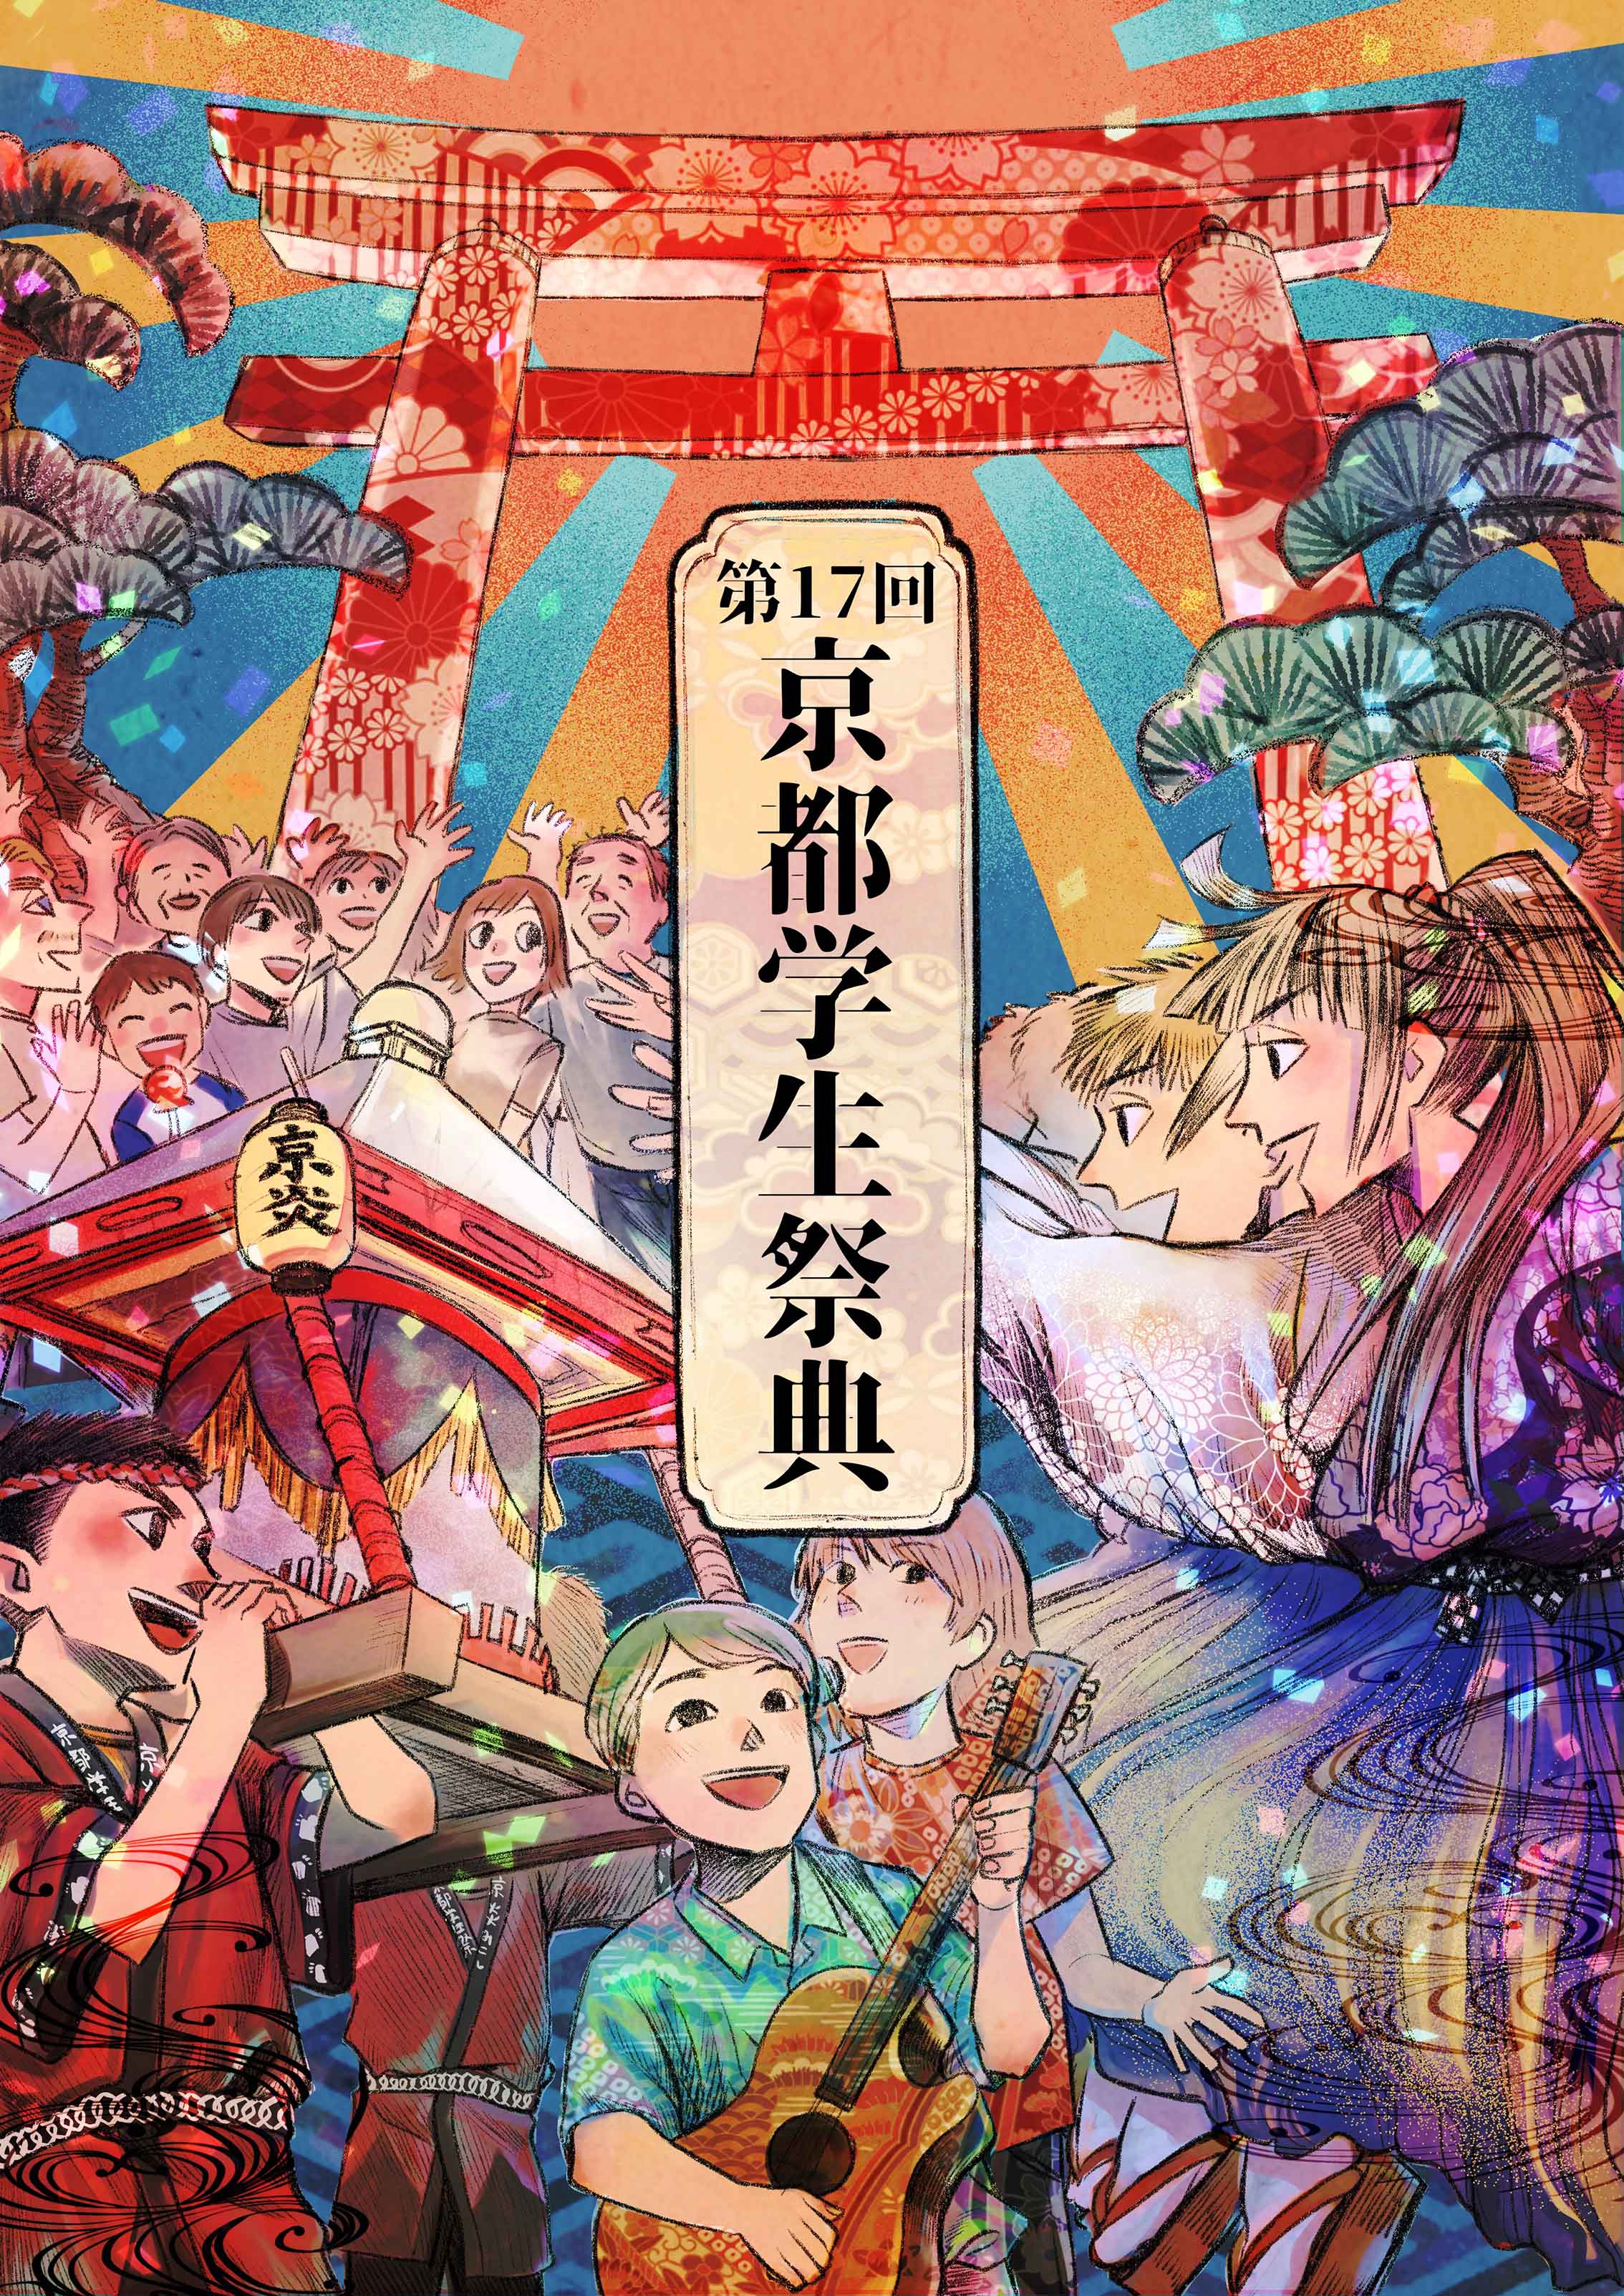 「第17回 京都学生祭典」メインビジュアルにストーリーマンガコース2年生 小畠瑠衣さんの作品が採用